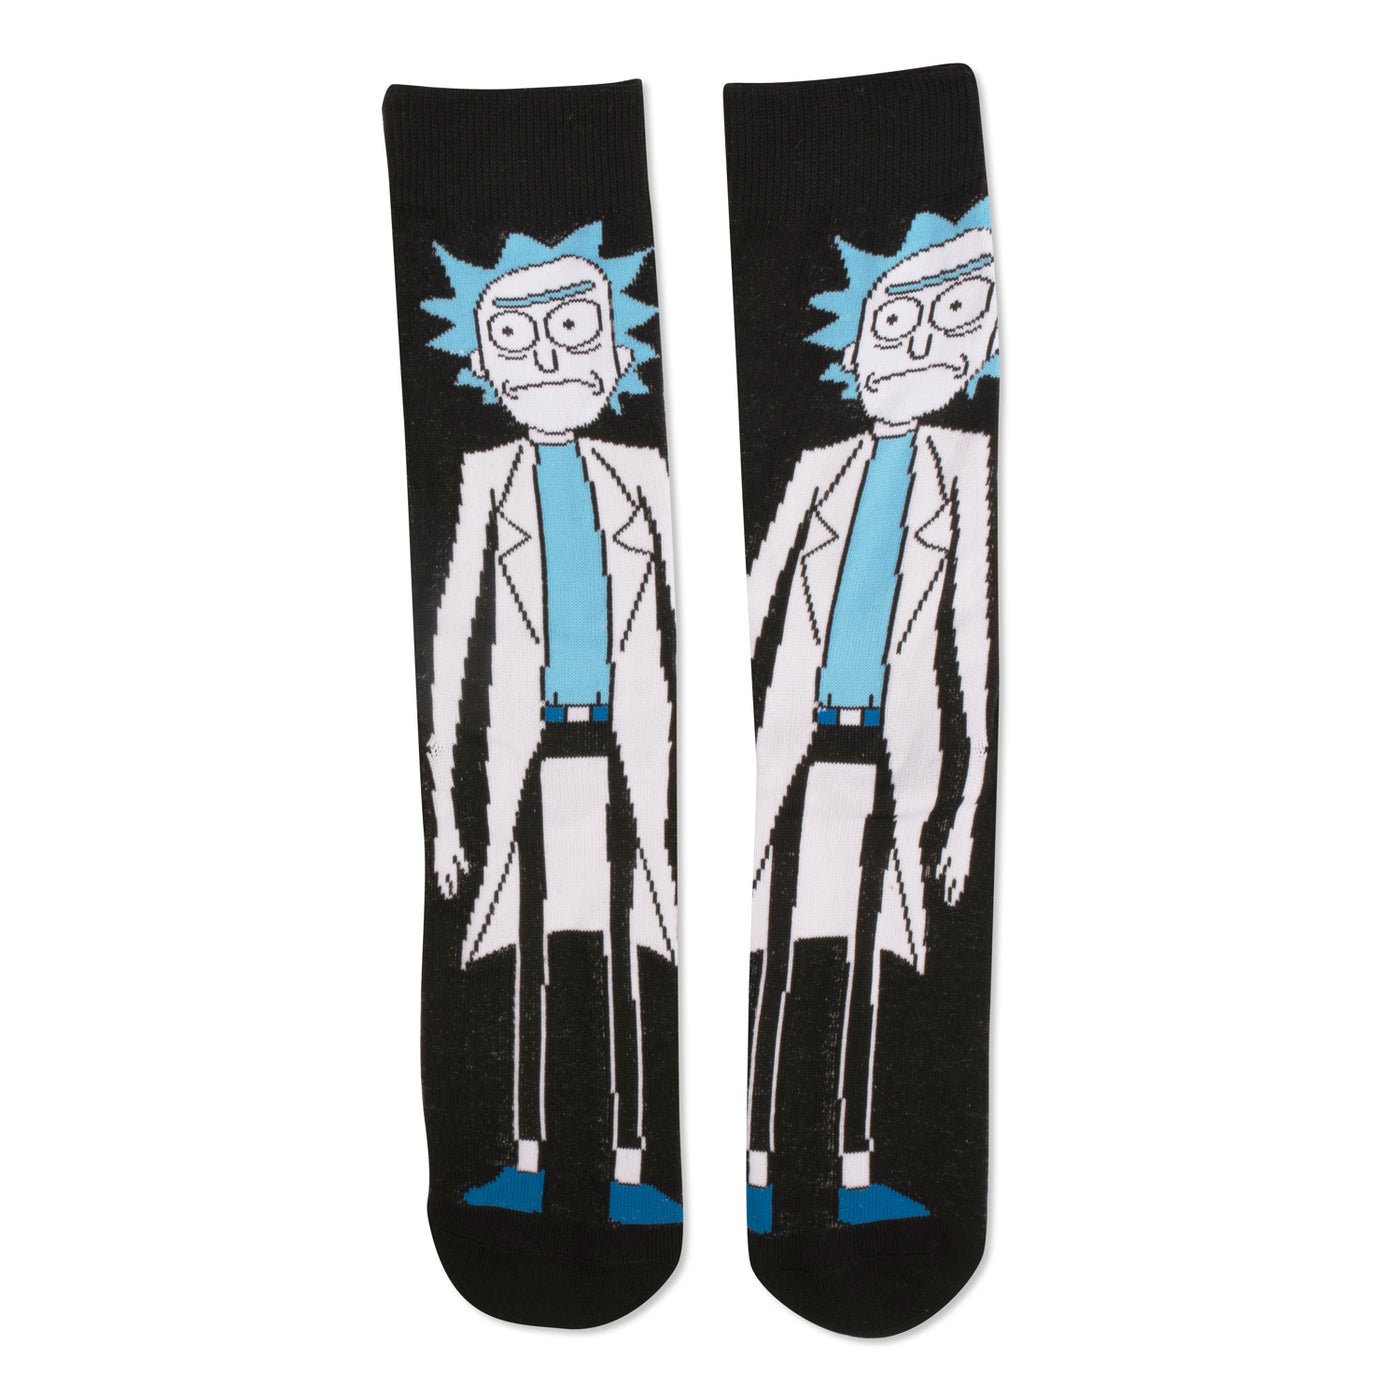 Rick and Morty Socks!